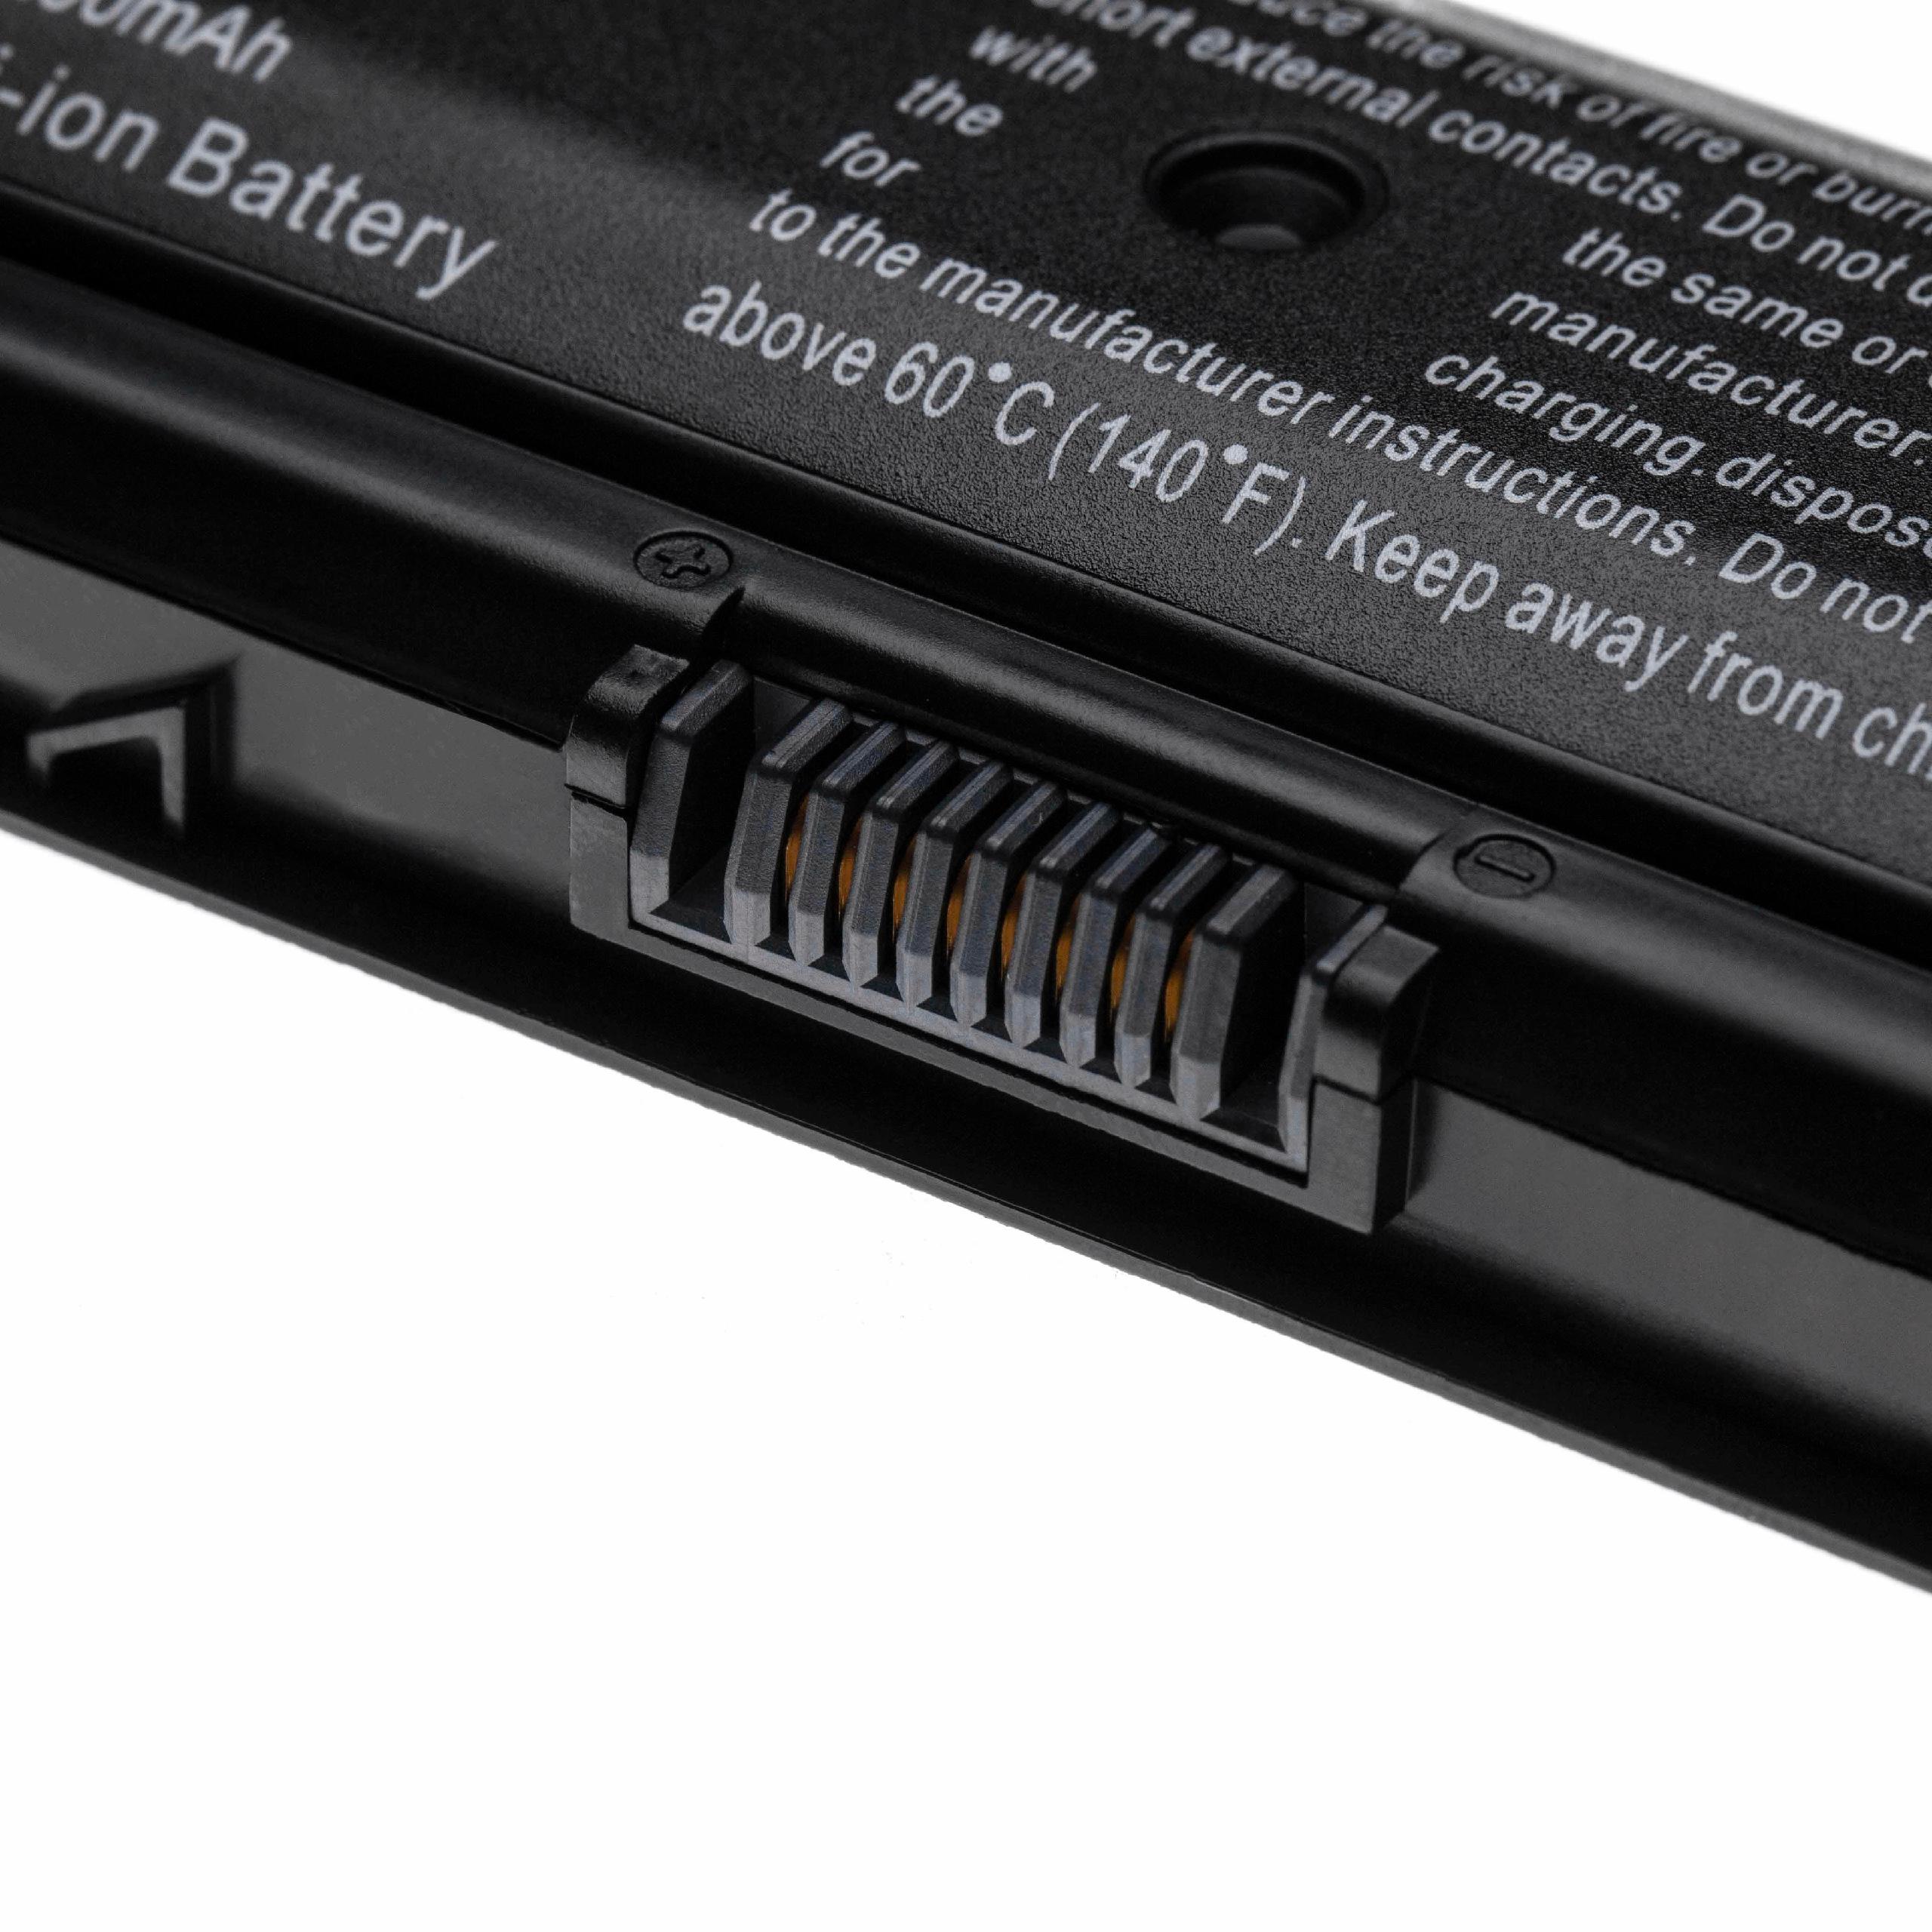 Batterie remplace HP HSTNN-LB40, 709988-421, HSTNN-LB4N pour ordinateur portable - 5200mAh 10,8V Li-ion, noir